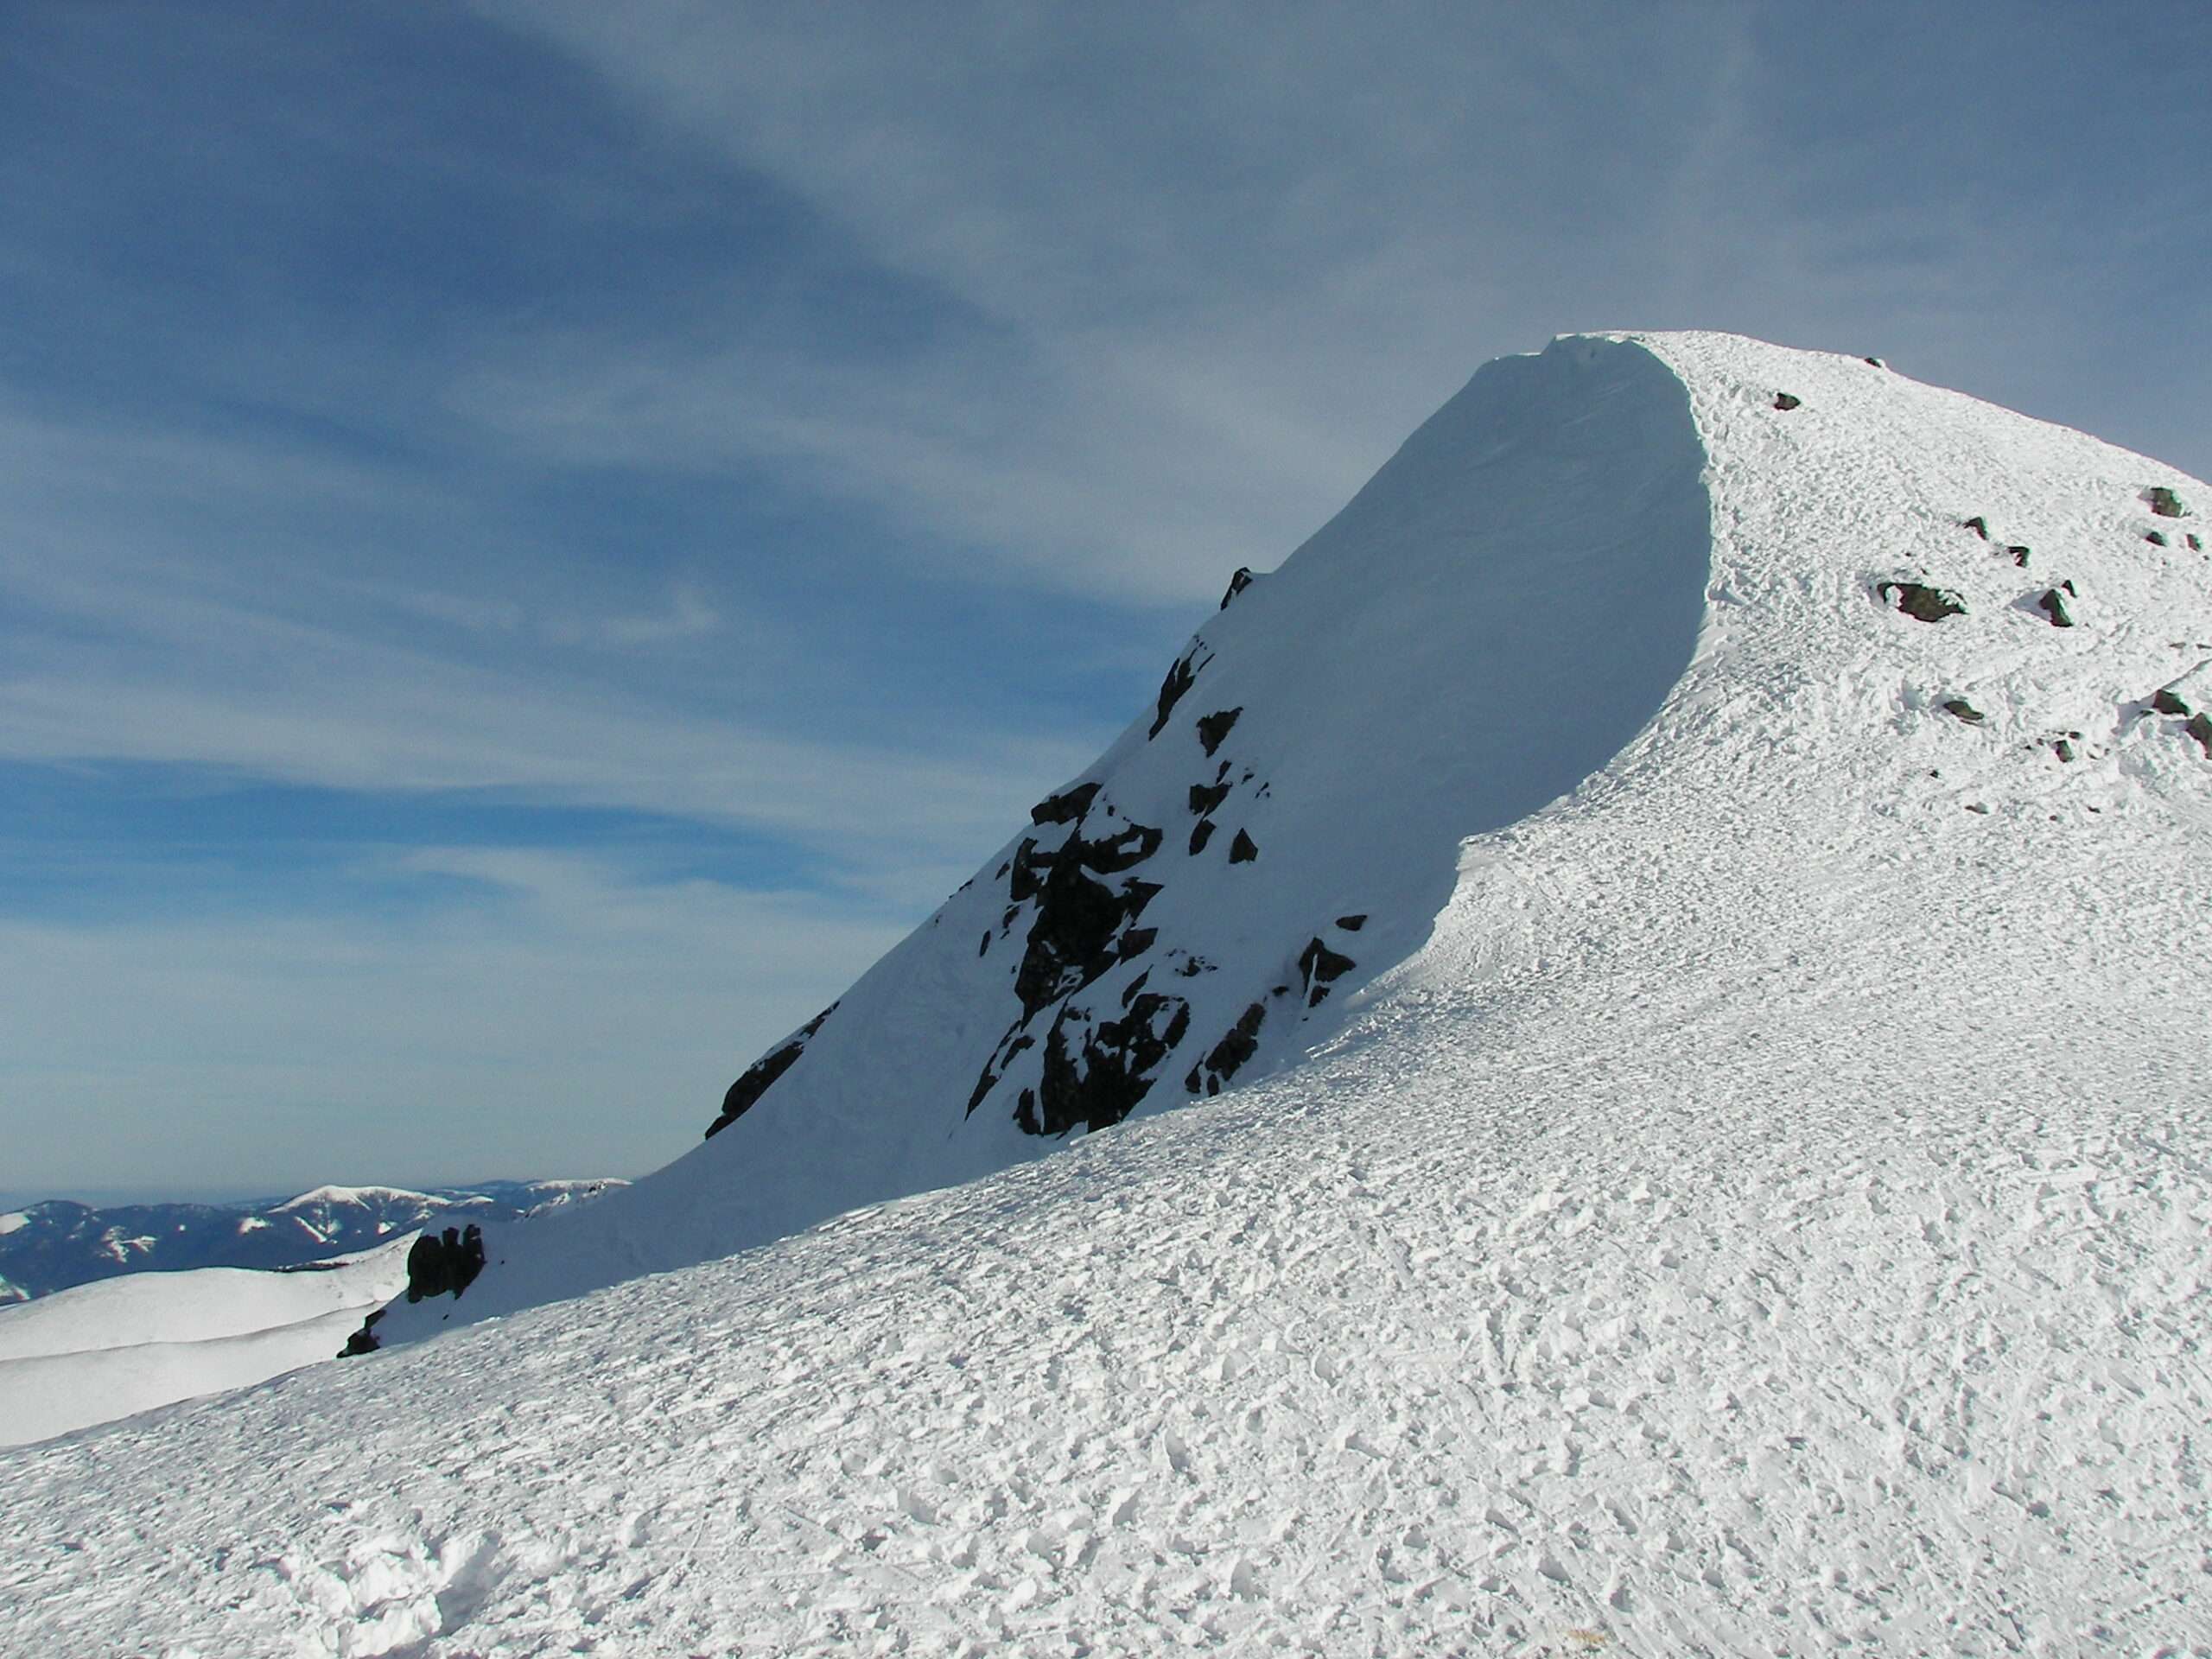 góra Chopok w ośrodku narciarskim Jasna to ulubiona stacja narciarska polskich narciarzy